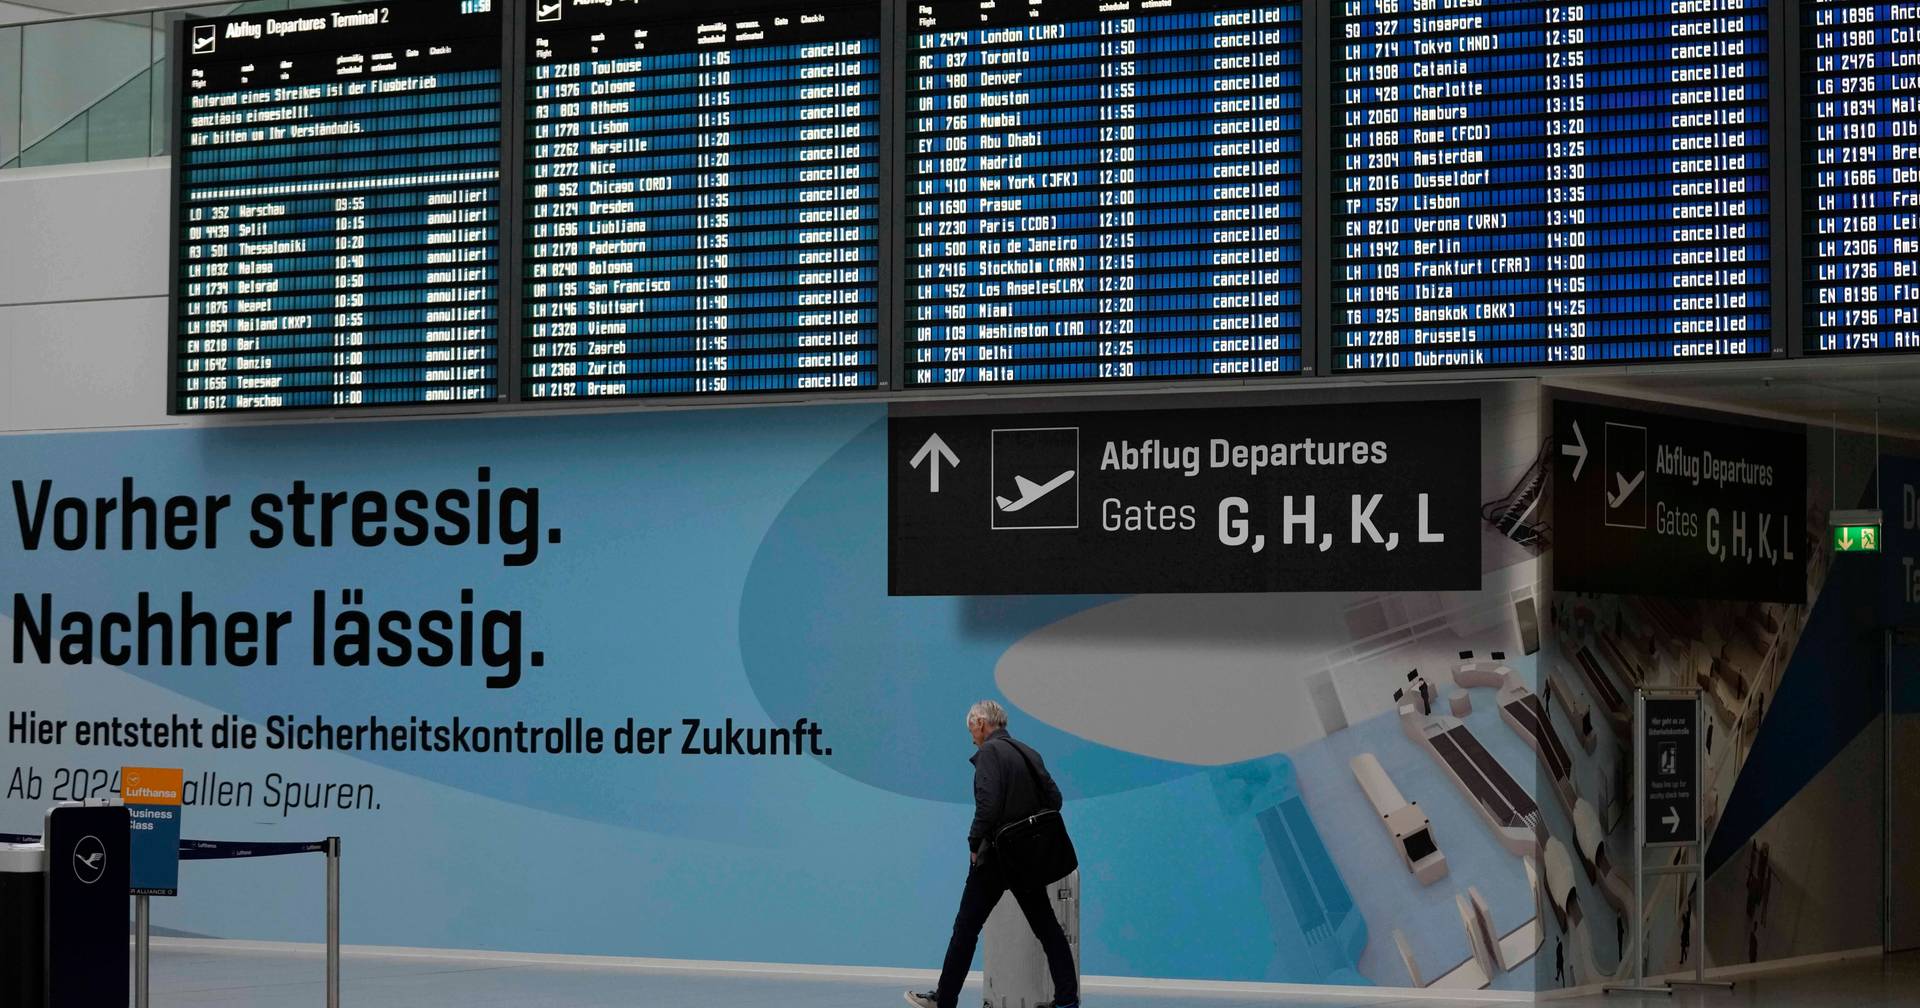 Verspätungen und annullierte Flüge in Deutschland am Vorabend des landesweiten Streiks